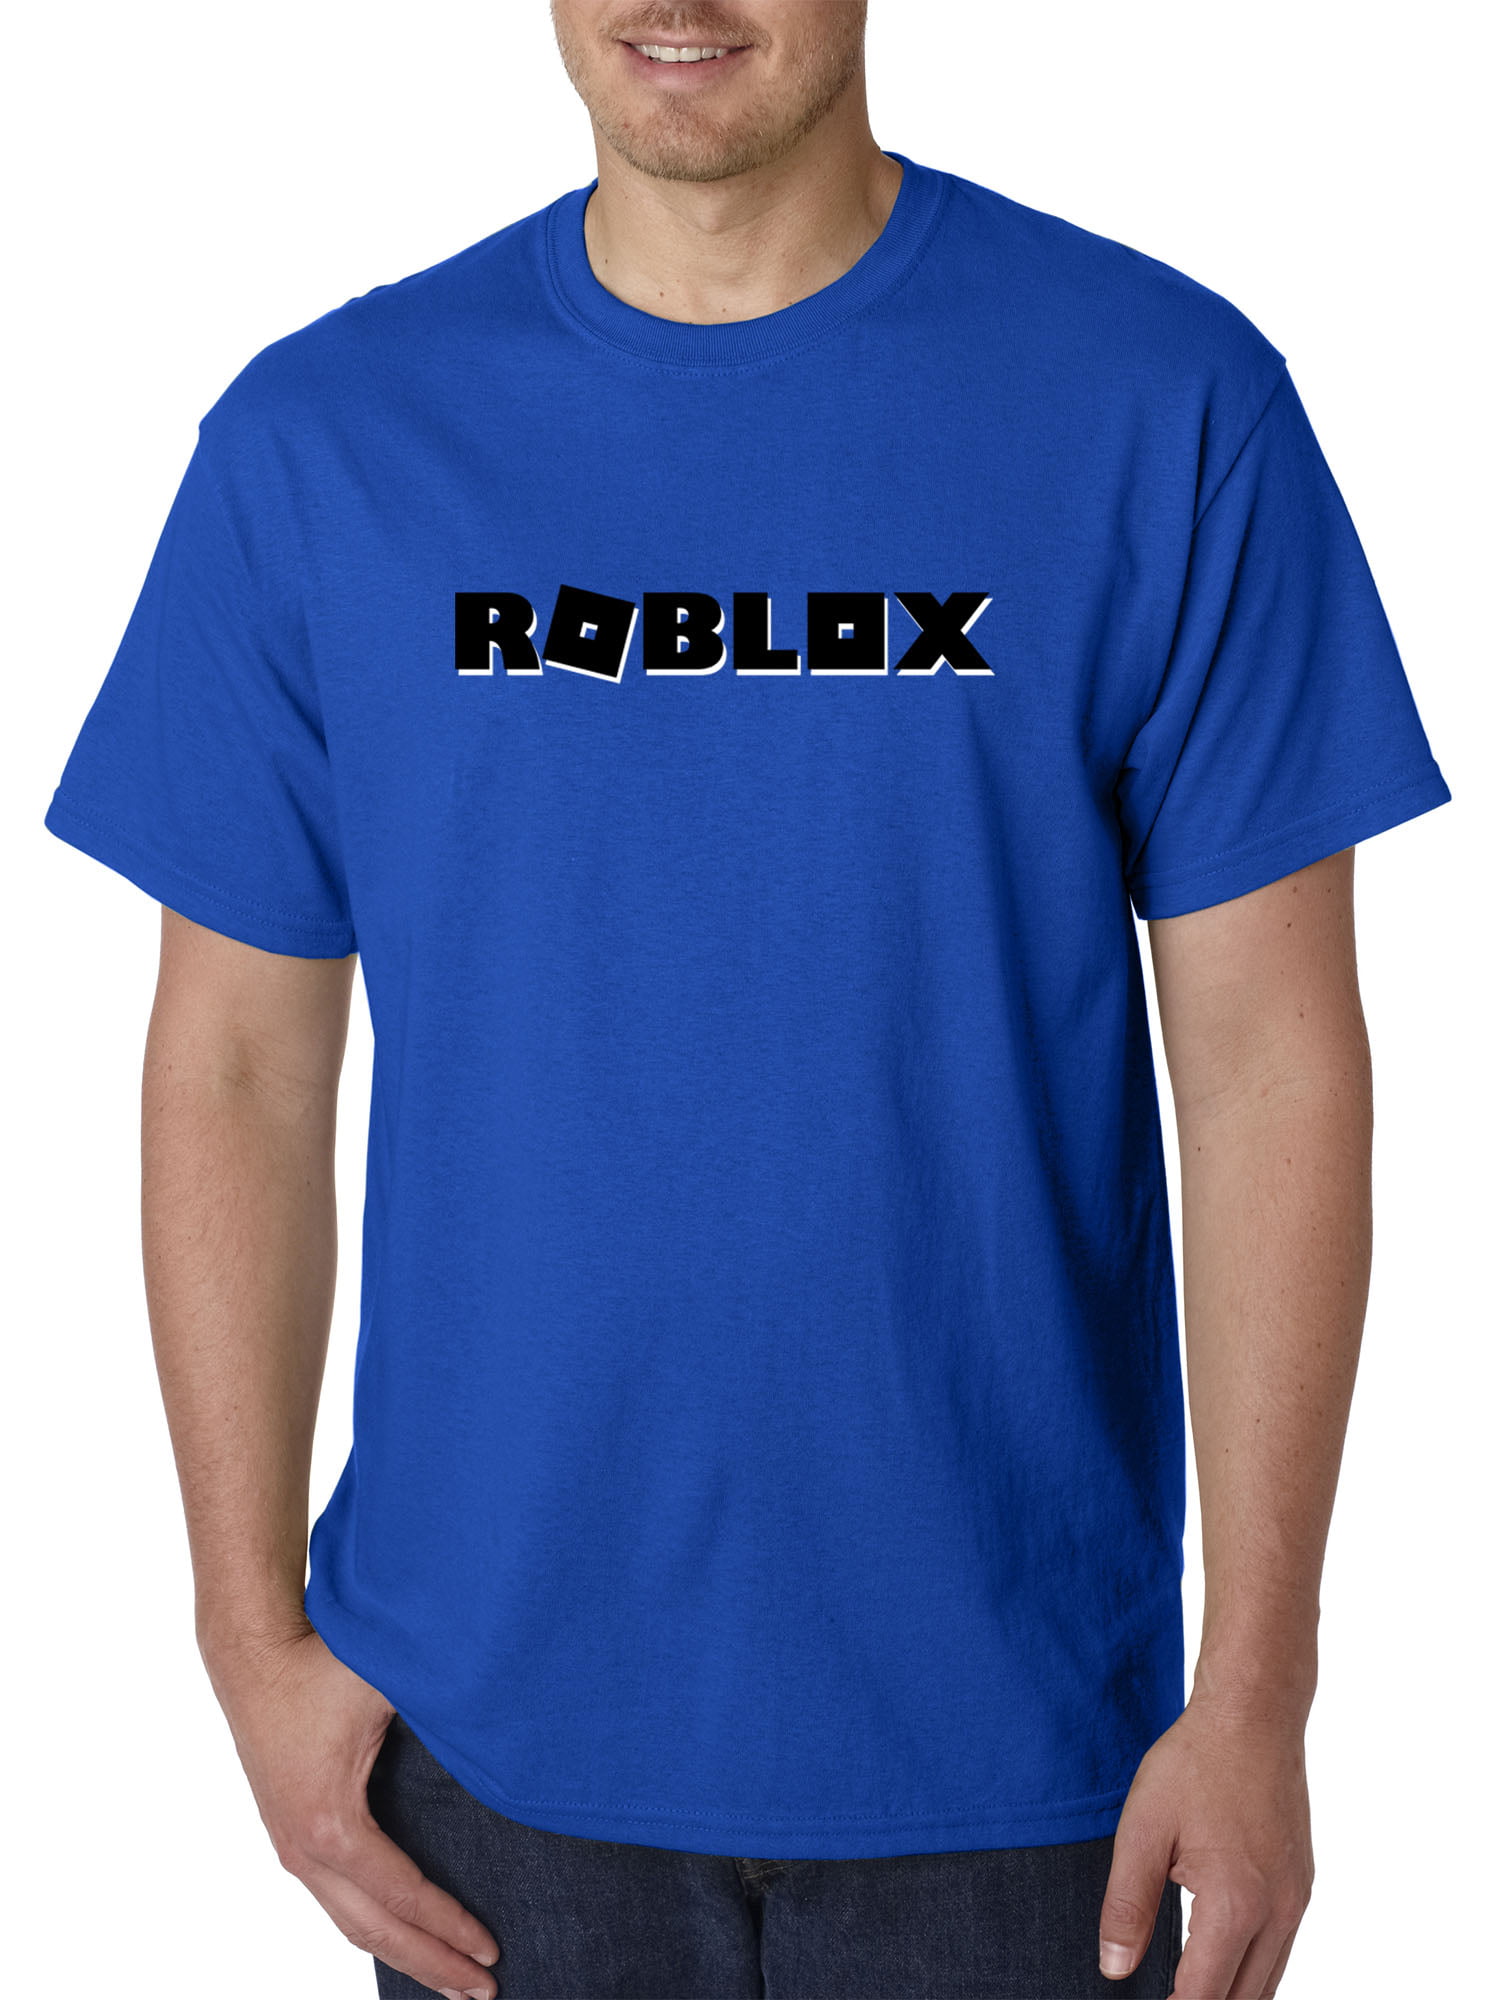 New Way New Way 1168 Unisex T Shirt Roblox Block Logo Game Accent Medium Royal Blue Walmart Com - roblox clothes walmart com